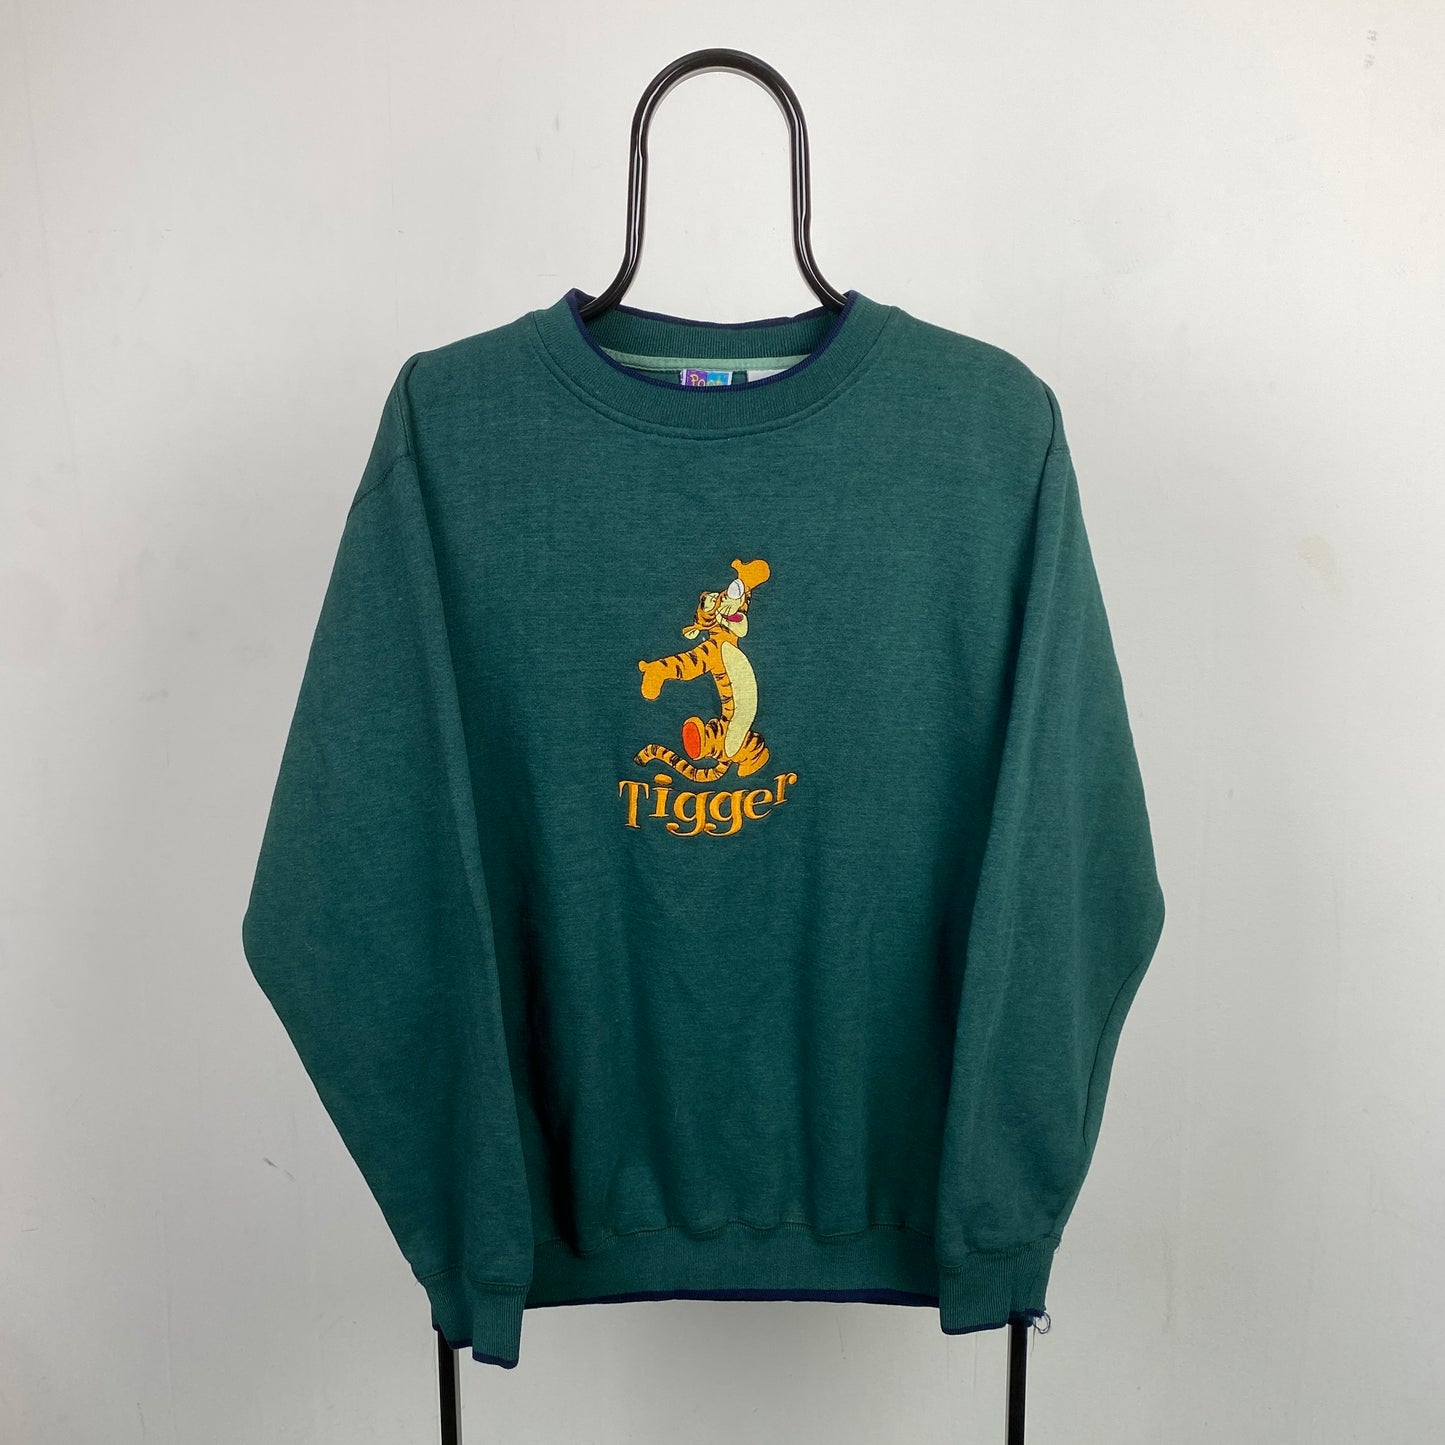 Retro Disney Tigger Sweatshirt Green XL